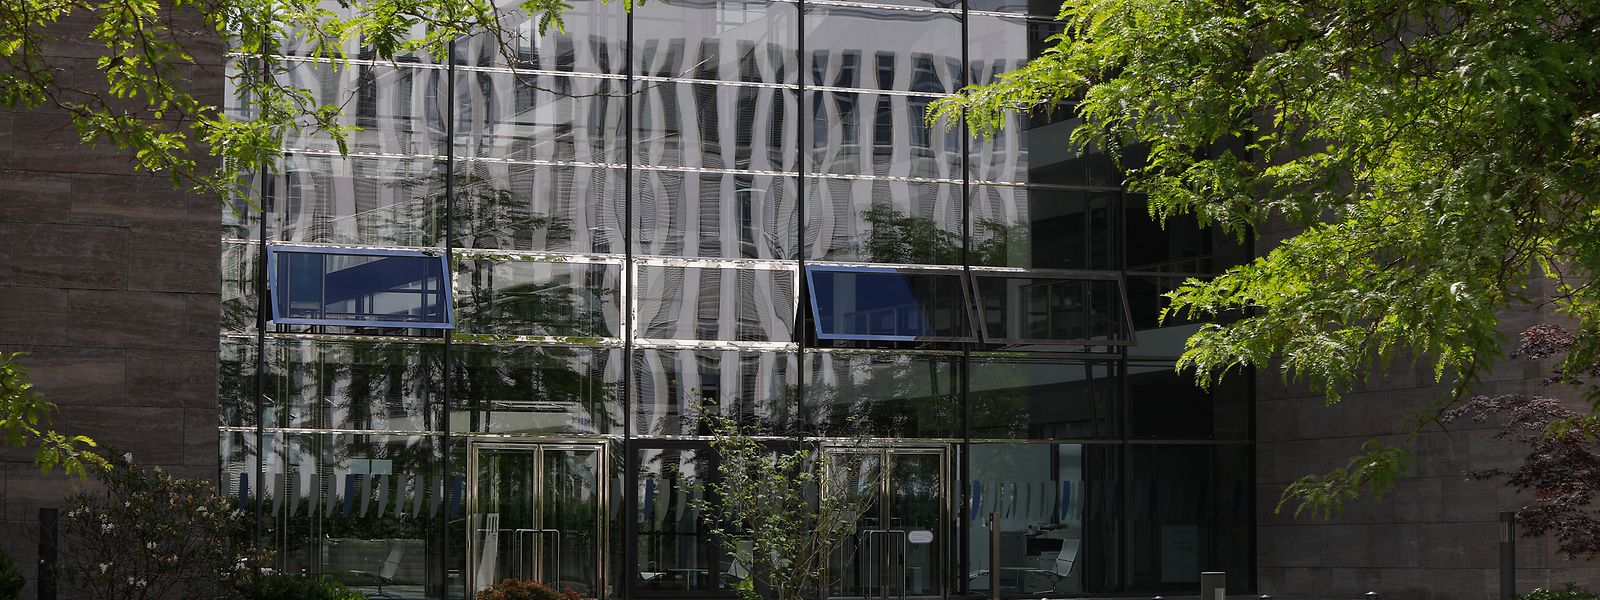 Sede do Banco Europeu de Investimento, em Kirchberg.